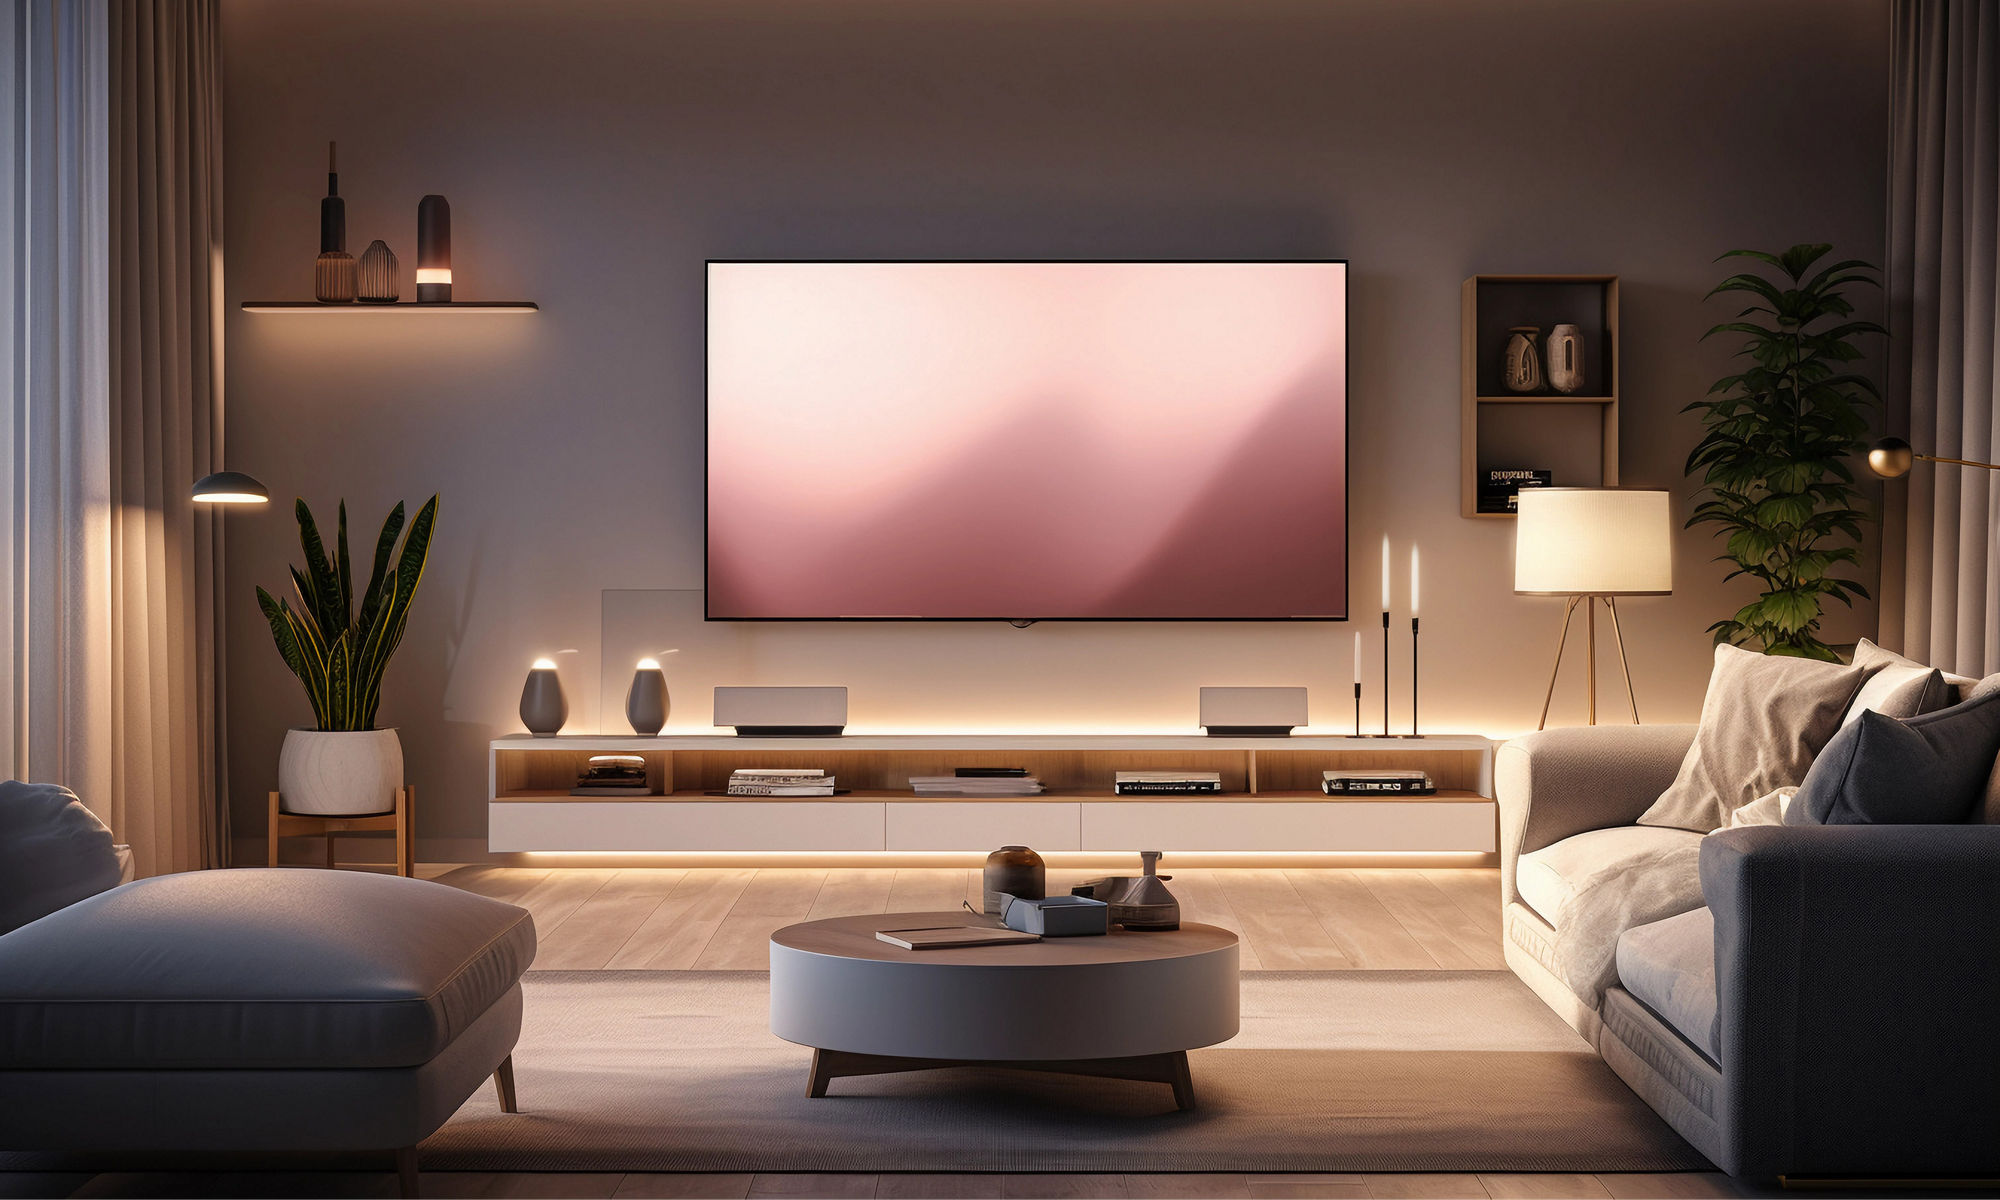 以環繞智慧居家技術照明的現代客廳；電視後面變換的 LED 燈、邊桌上的智慧音響、裝在牆上的溫度調節裝置、IoT 裝置